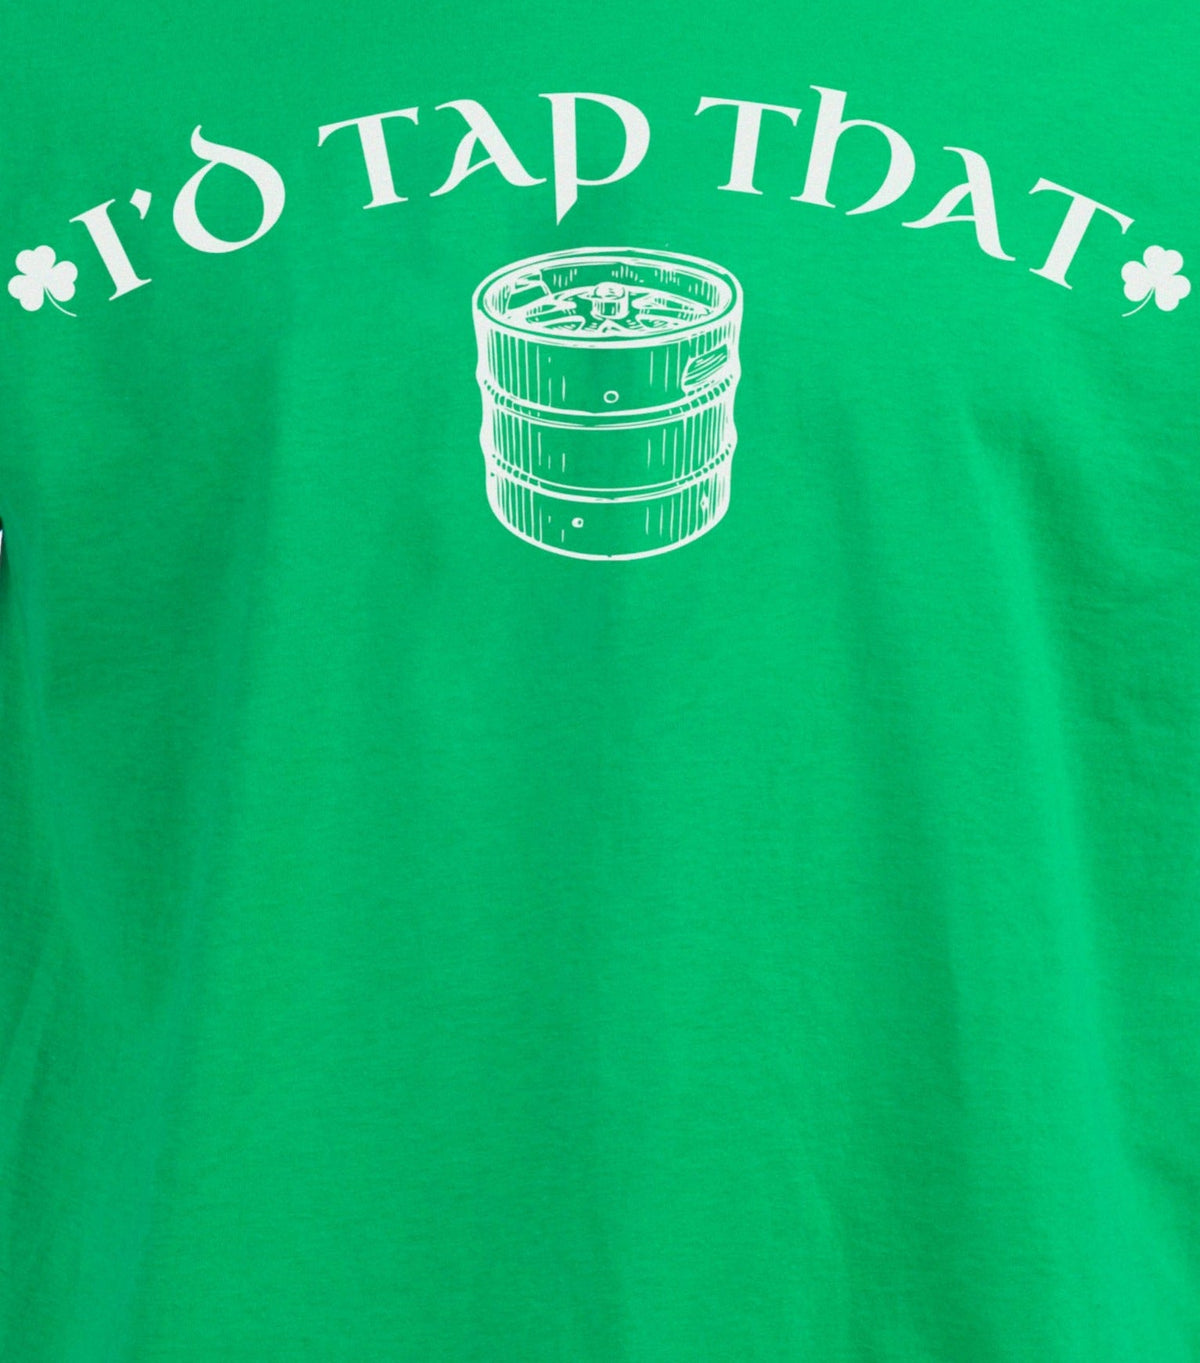 I'd Tap That (Keg) - St. Patrick's Day Drinking Beer Lover T-shirt - Men's/Unisex